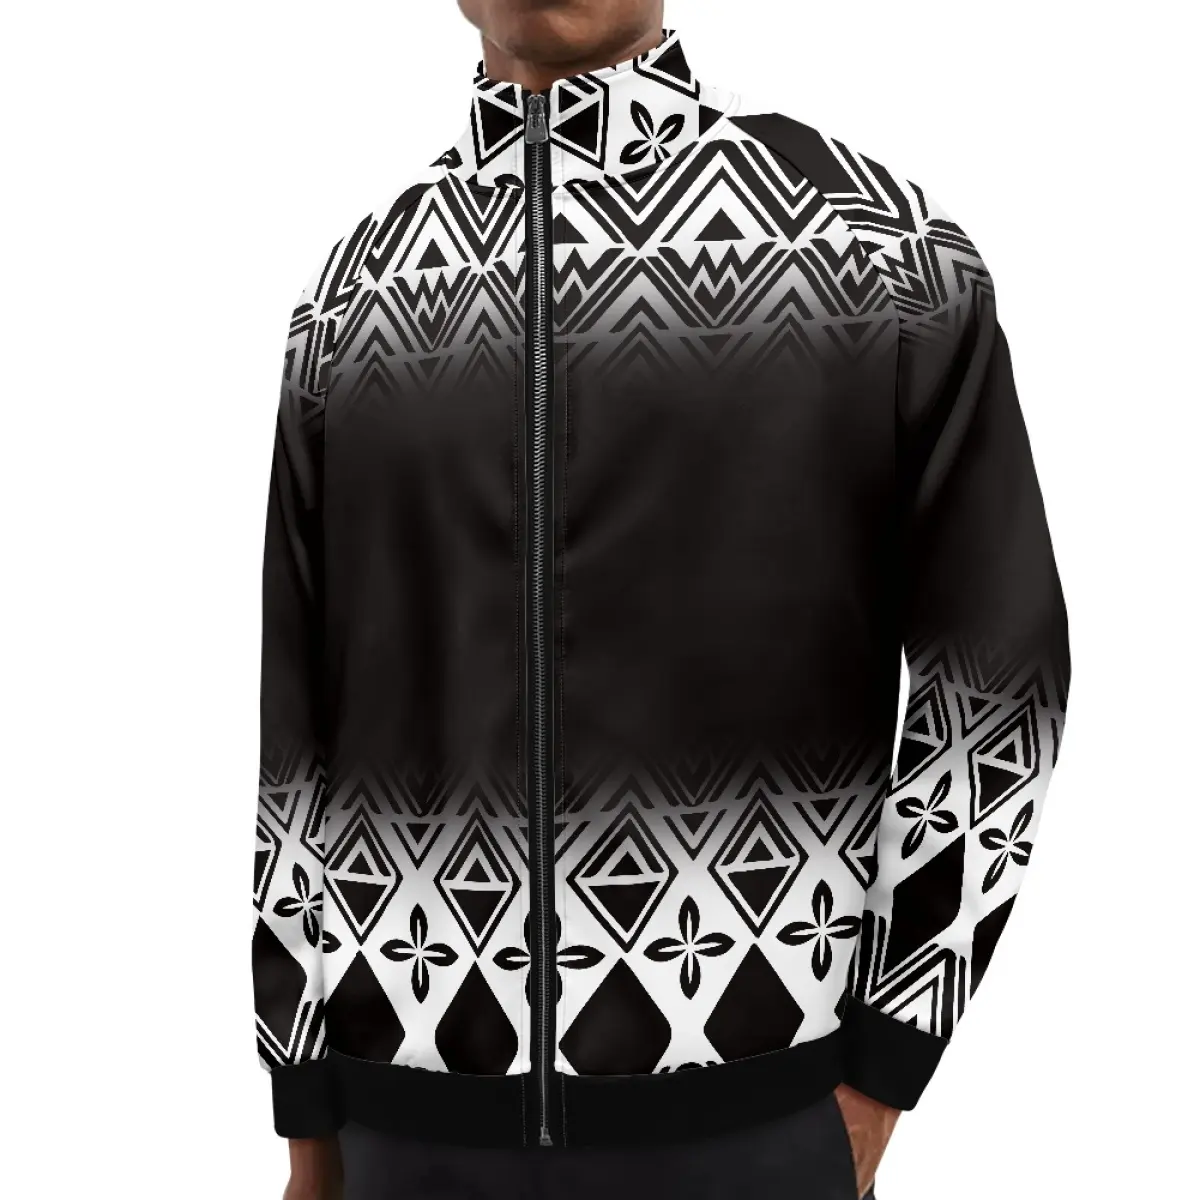 Damla nakliye 1MOQ siyah polinezya Elei kabile tasarım özel sıcak tutmak uzun kollu Zip UP boy rahat adam ceket erkekler için